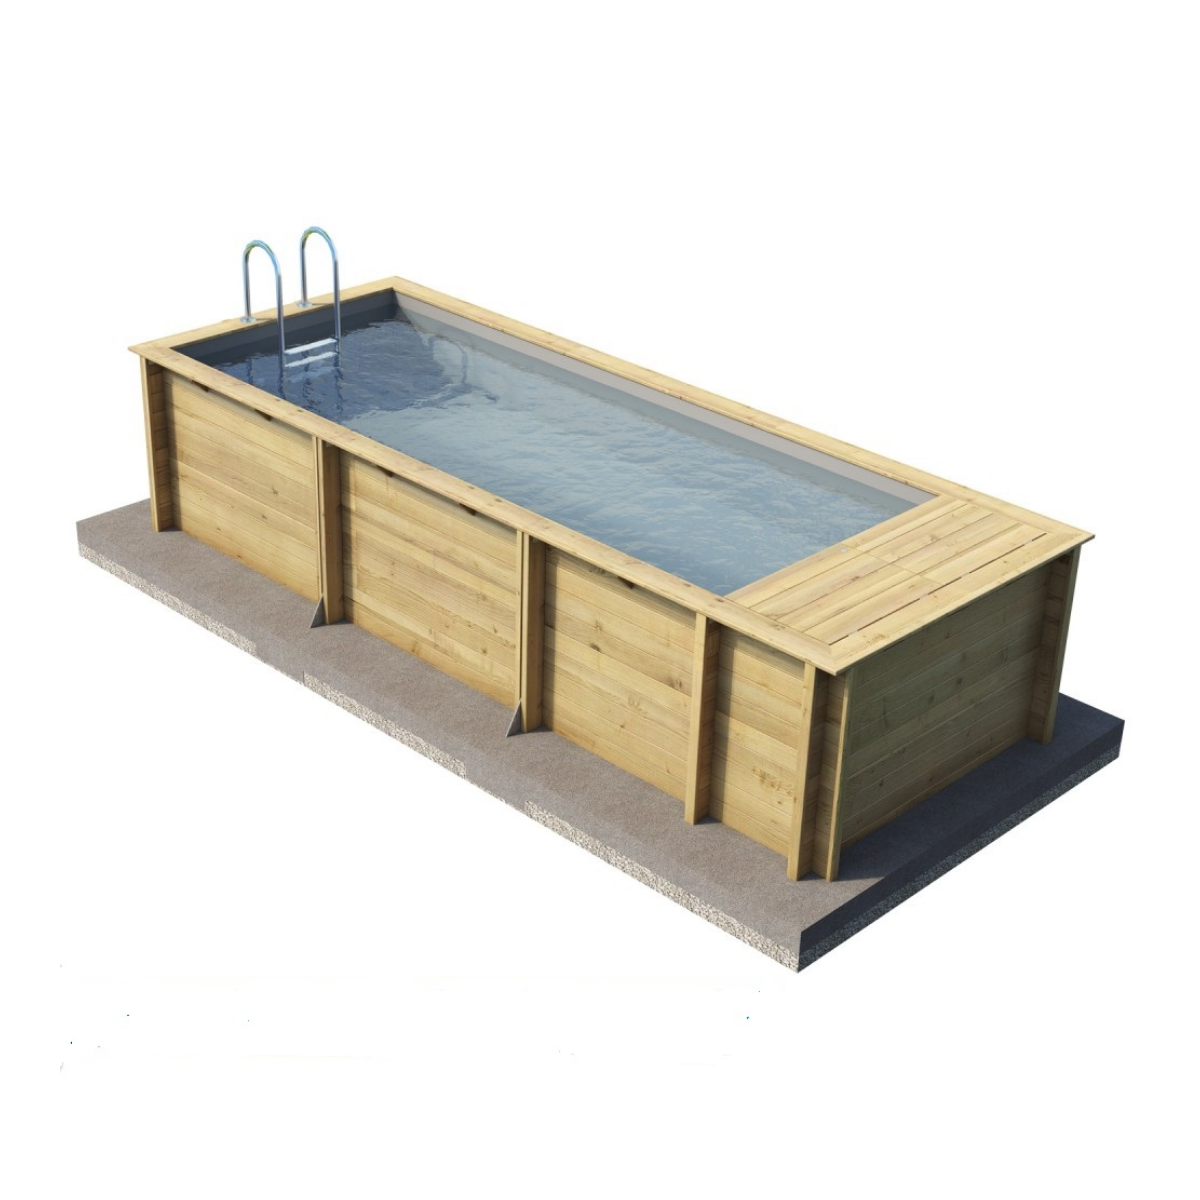 Pool'n Box Pool 5x2, Height 1,33cm Wood